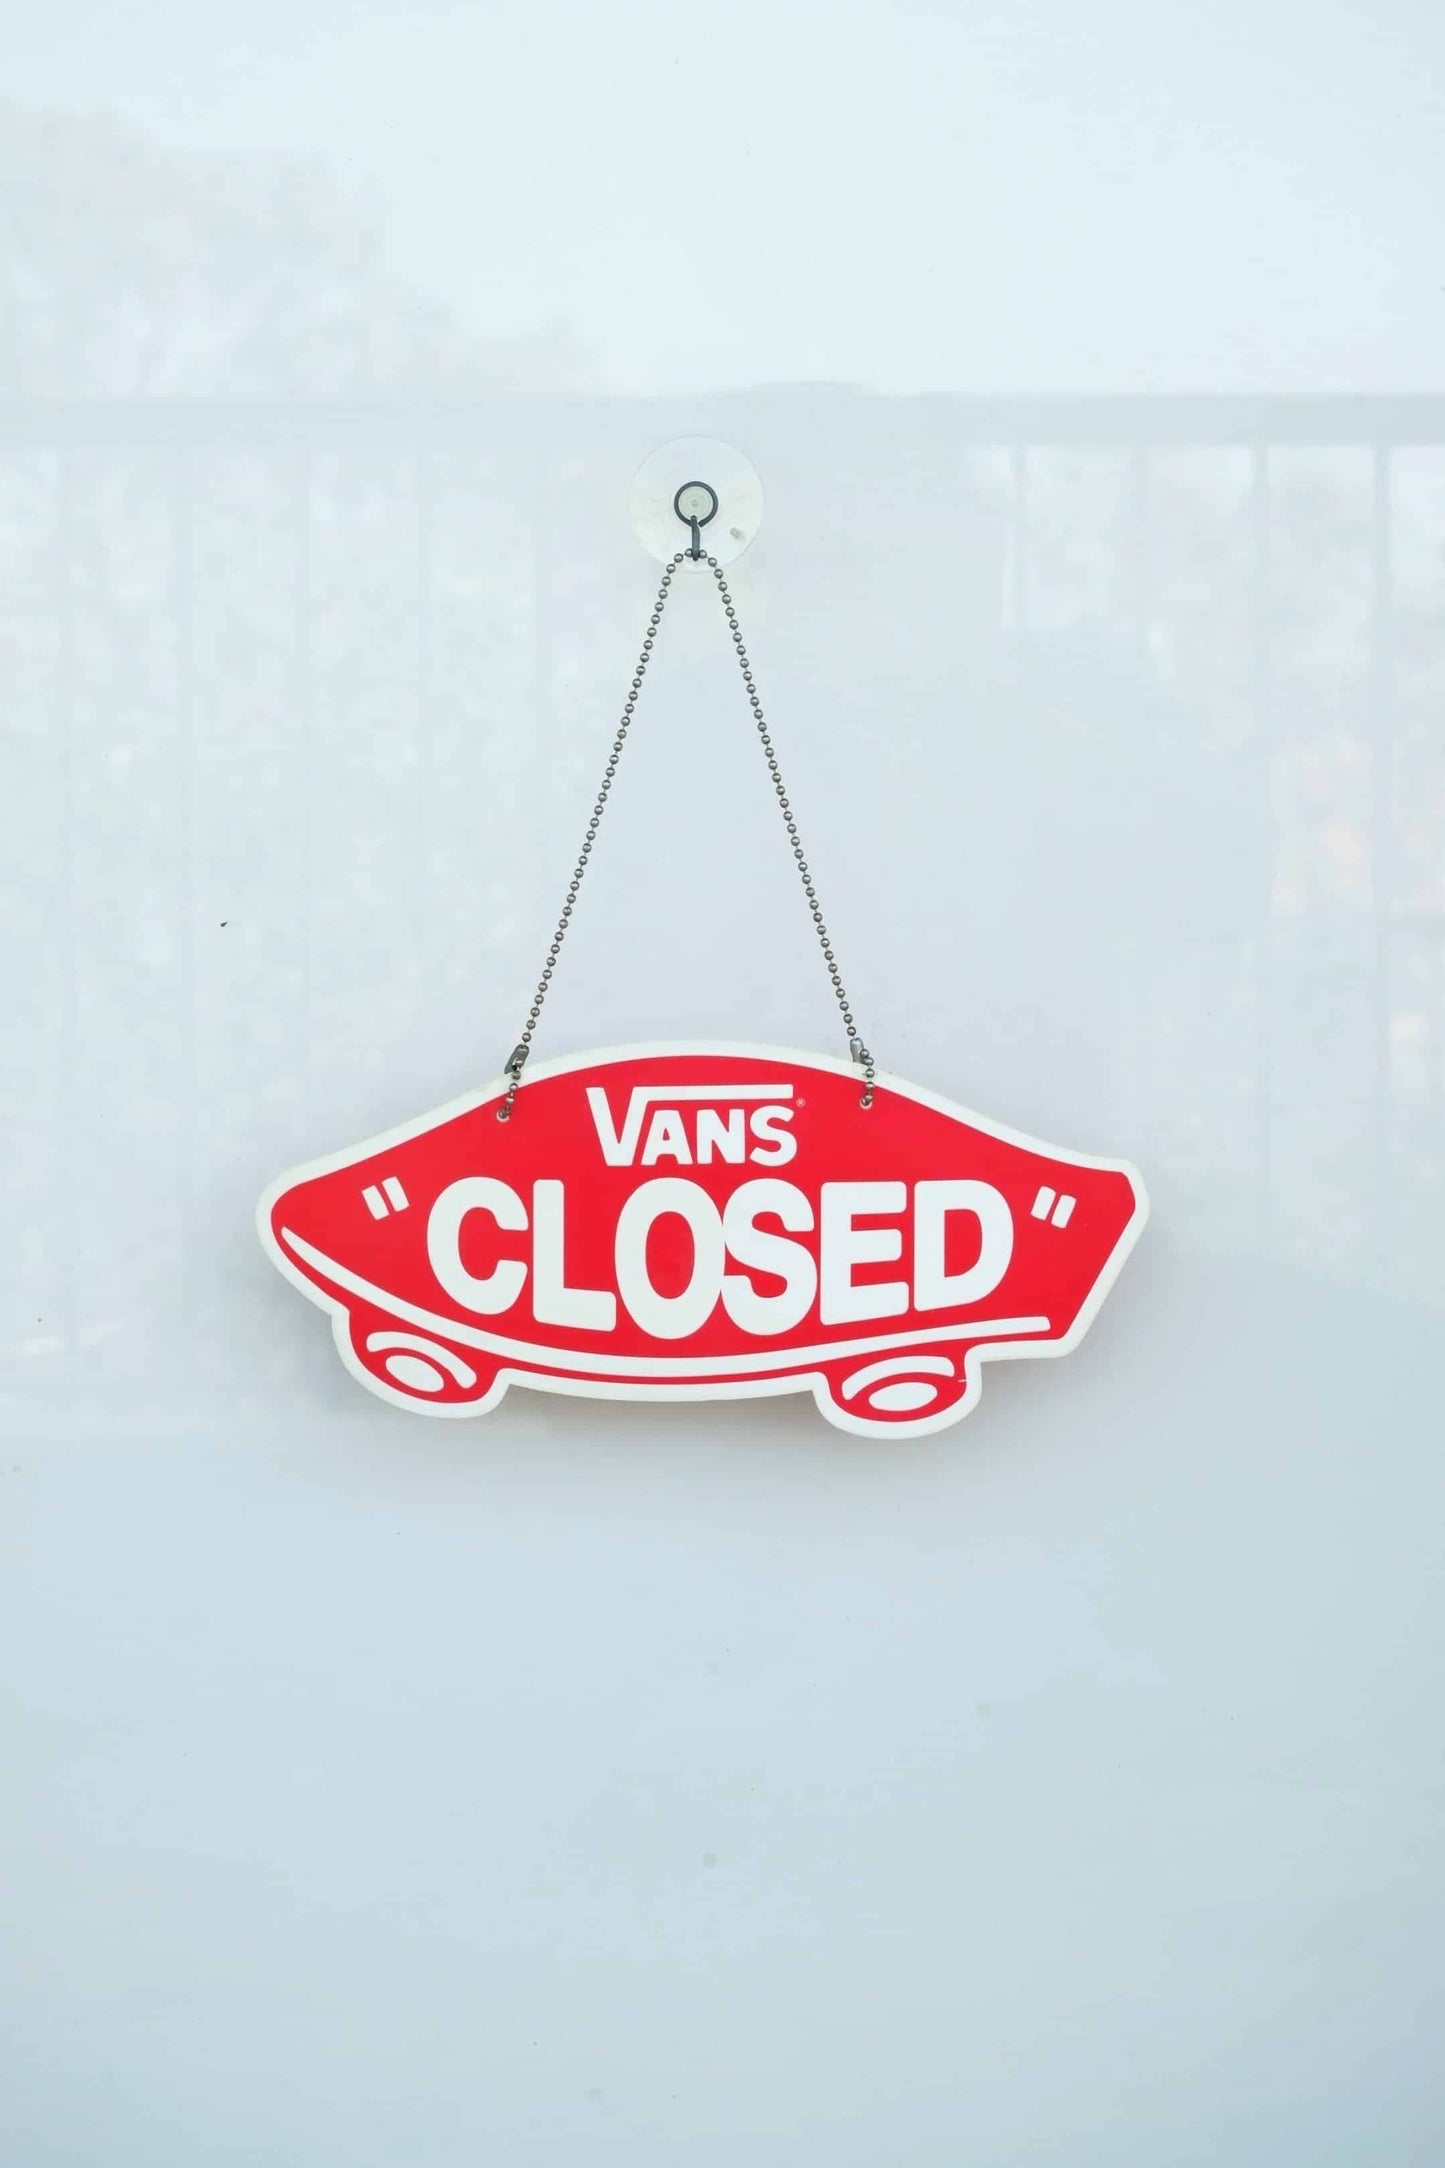 VANS Open/Closed Door Sign on white background